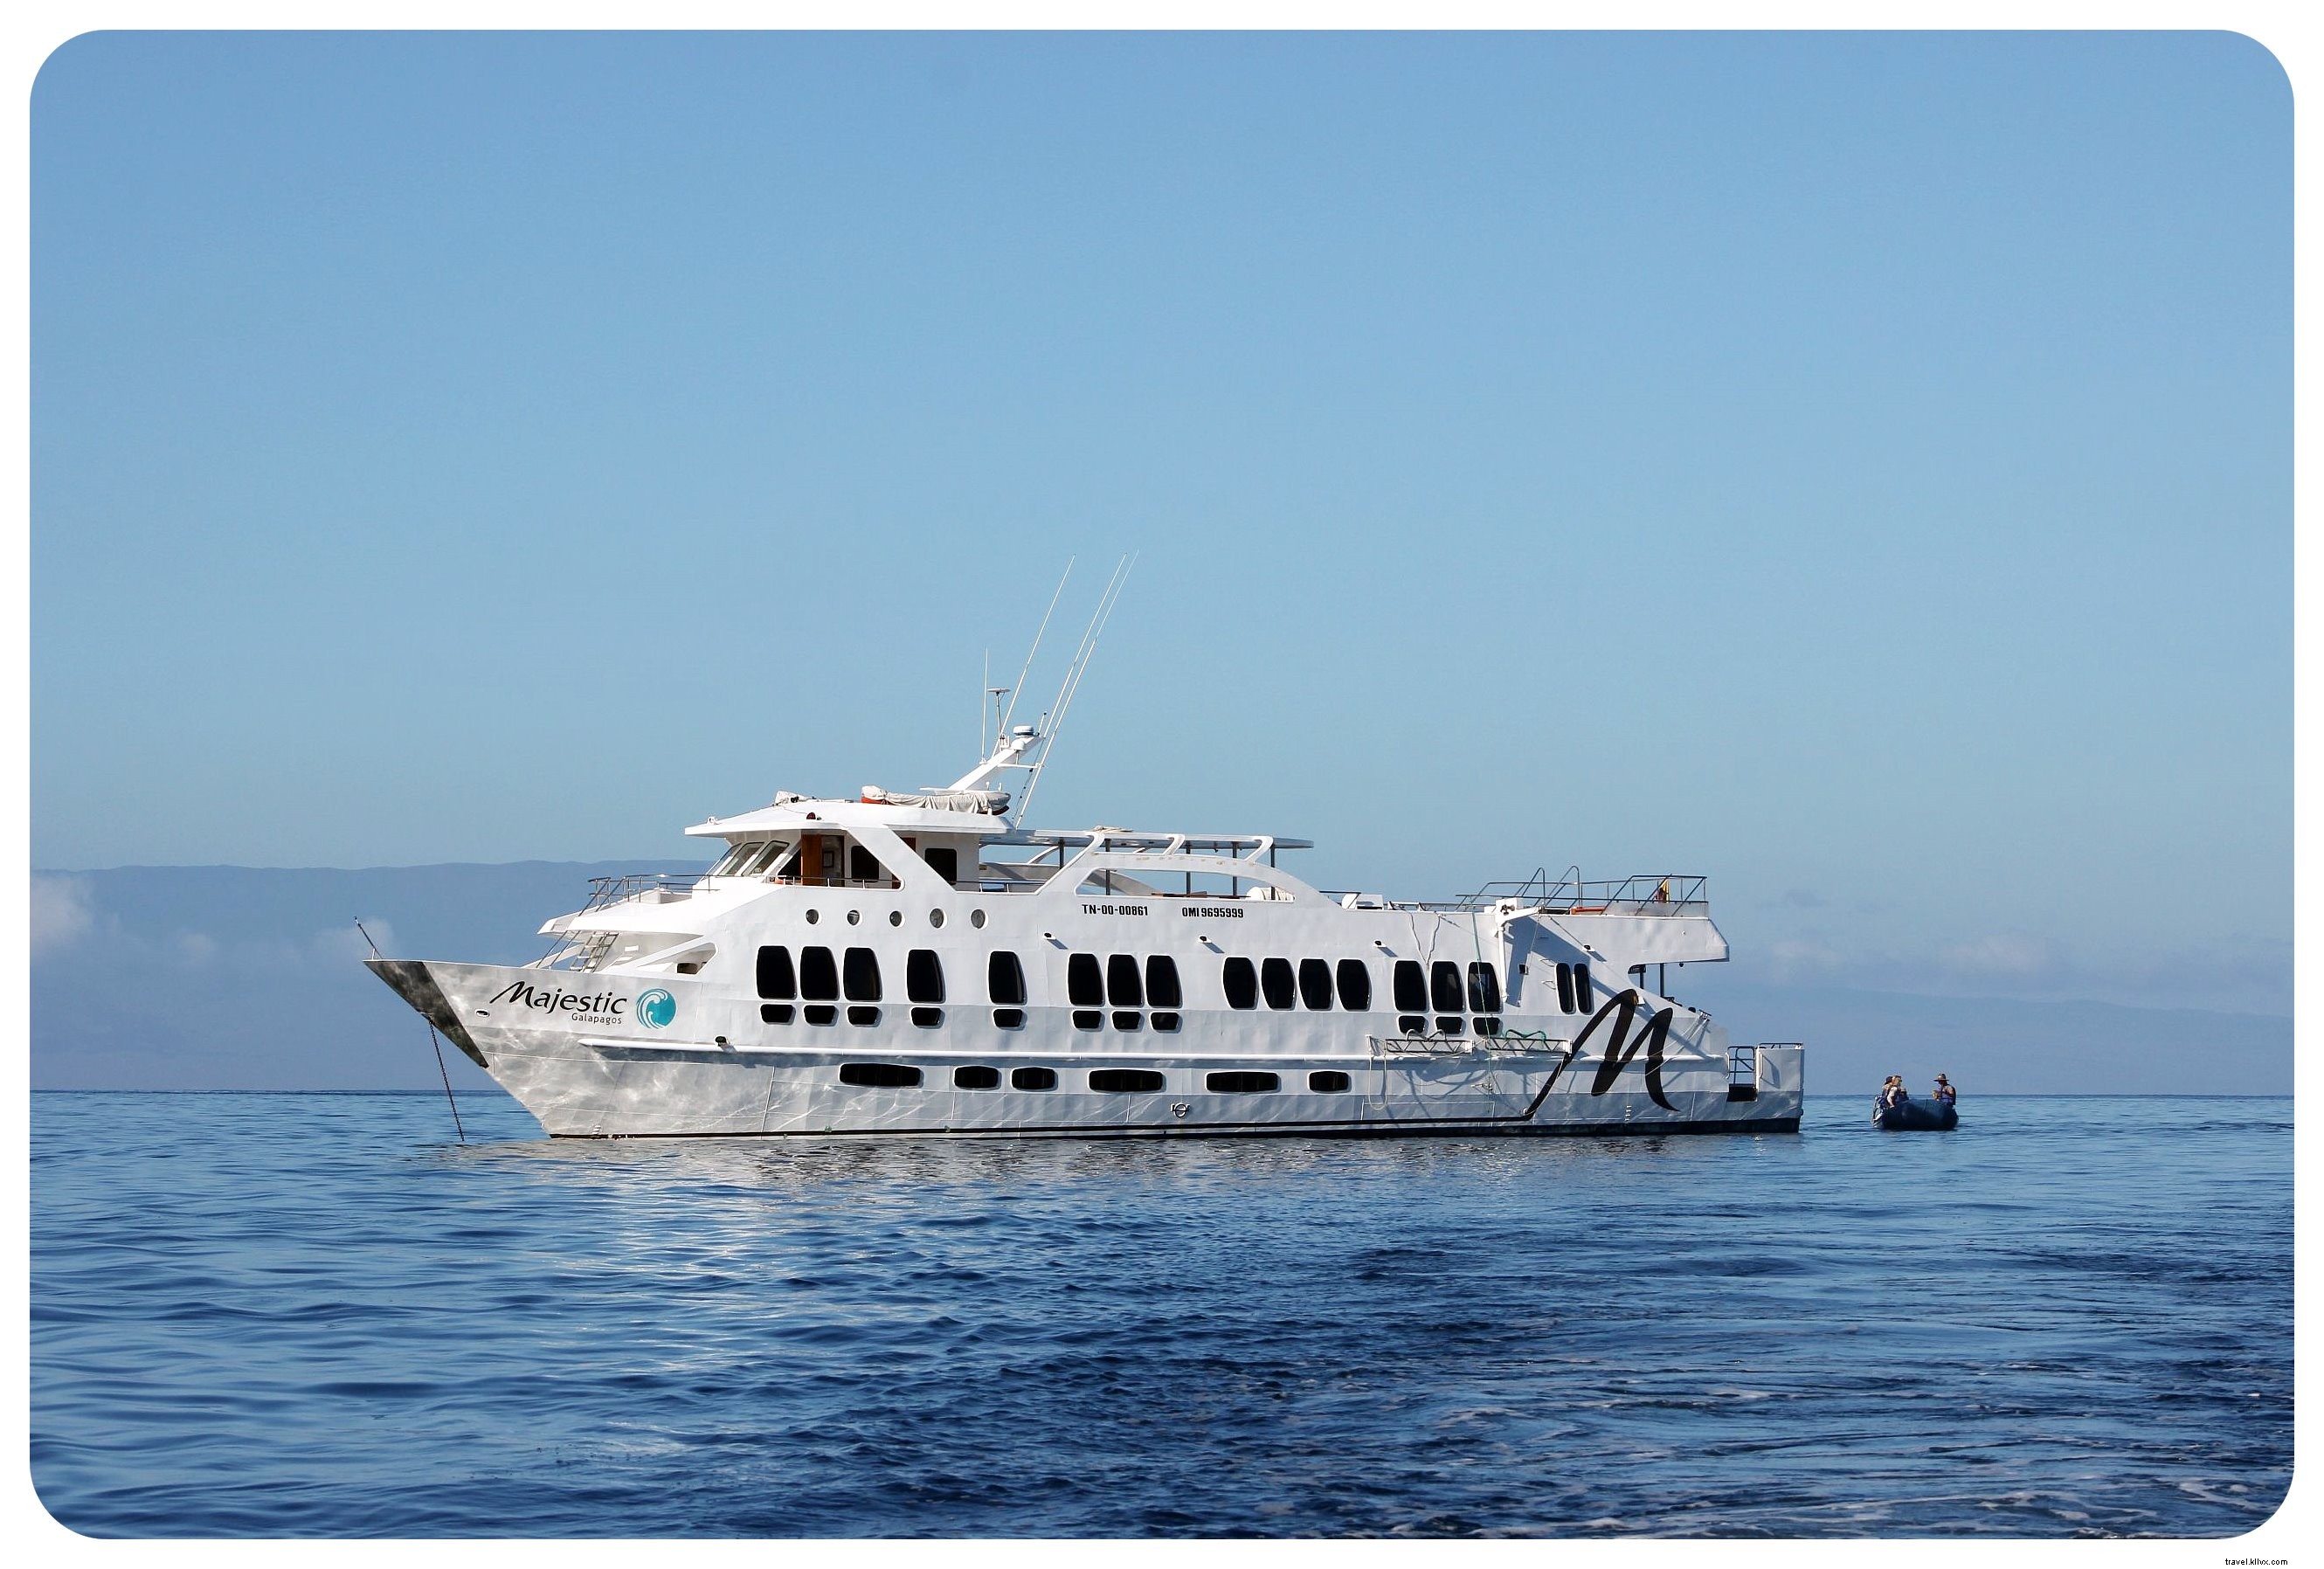 Meu cruzeiro pelas Ilhas Galápagos:Um sonho de viagem que se torna realidade